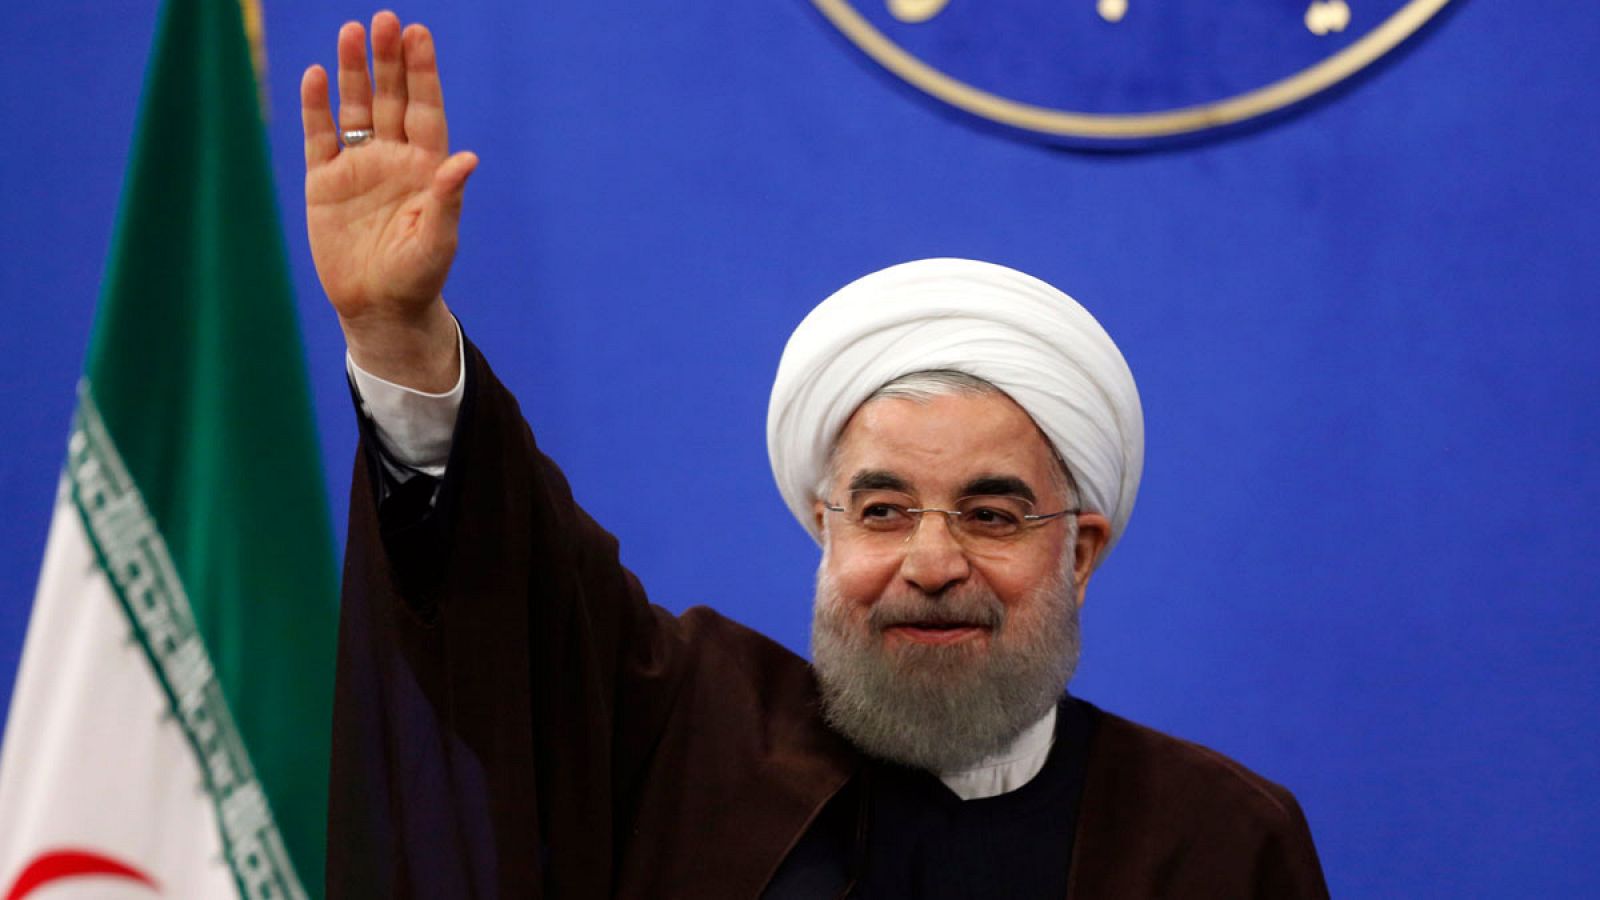 El presidente de Irán, Hassan Rohaní, en una intervención ante los medios